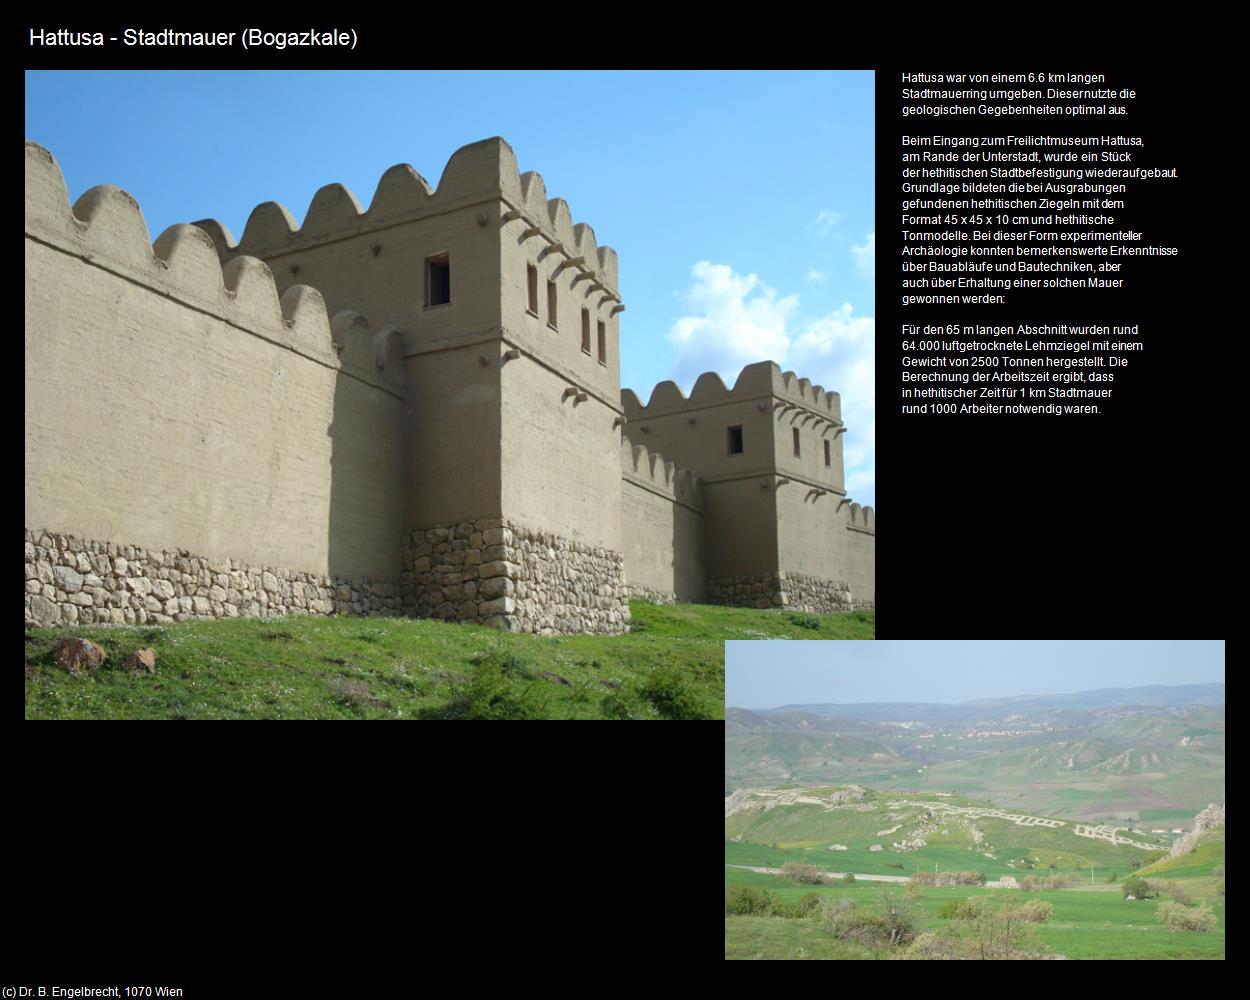 Hattusa - Stadtmauer (Bogazkale) in TÜRKEI